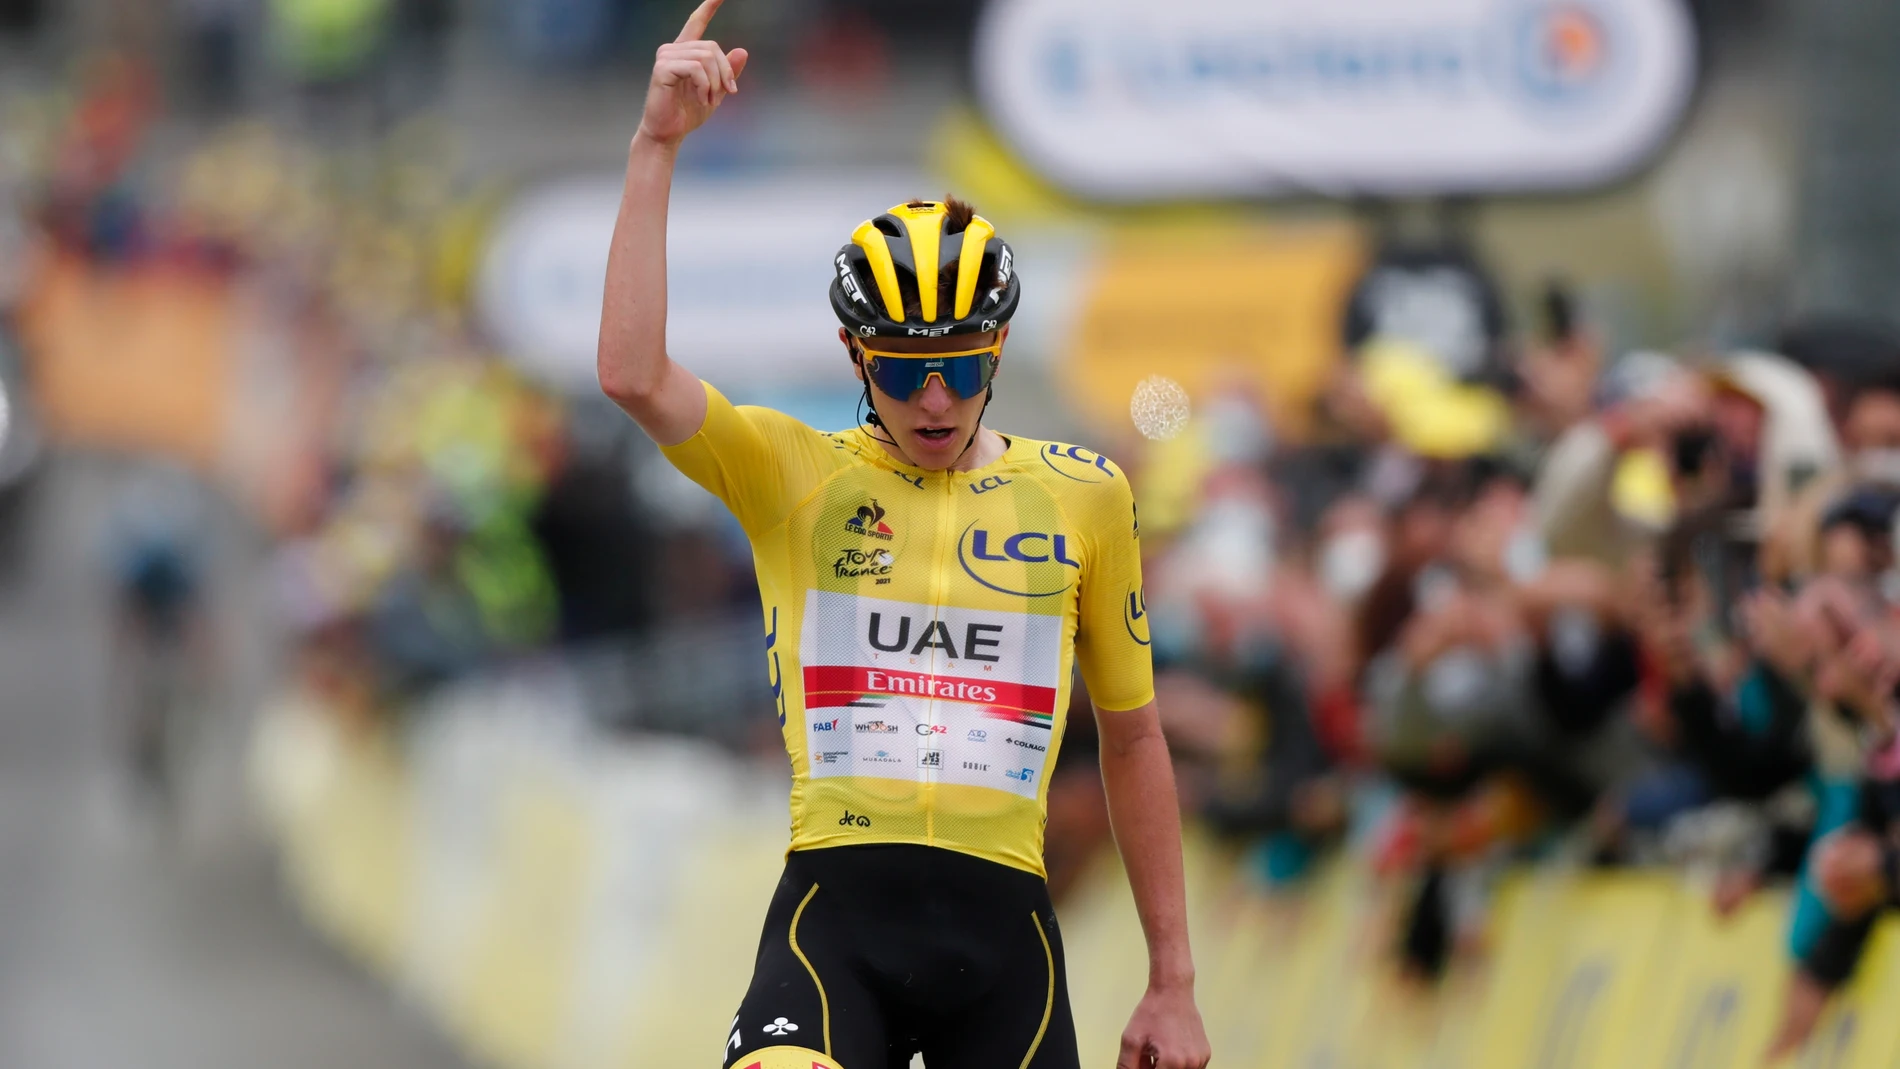 El ciclista esloveno Tadej Pogacar, líder de la clasificación general, celebra su victoria en la decimoctava etapa del Tour de Francia, entre Pau y Luz Ardiden